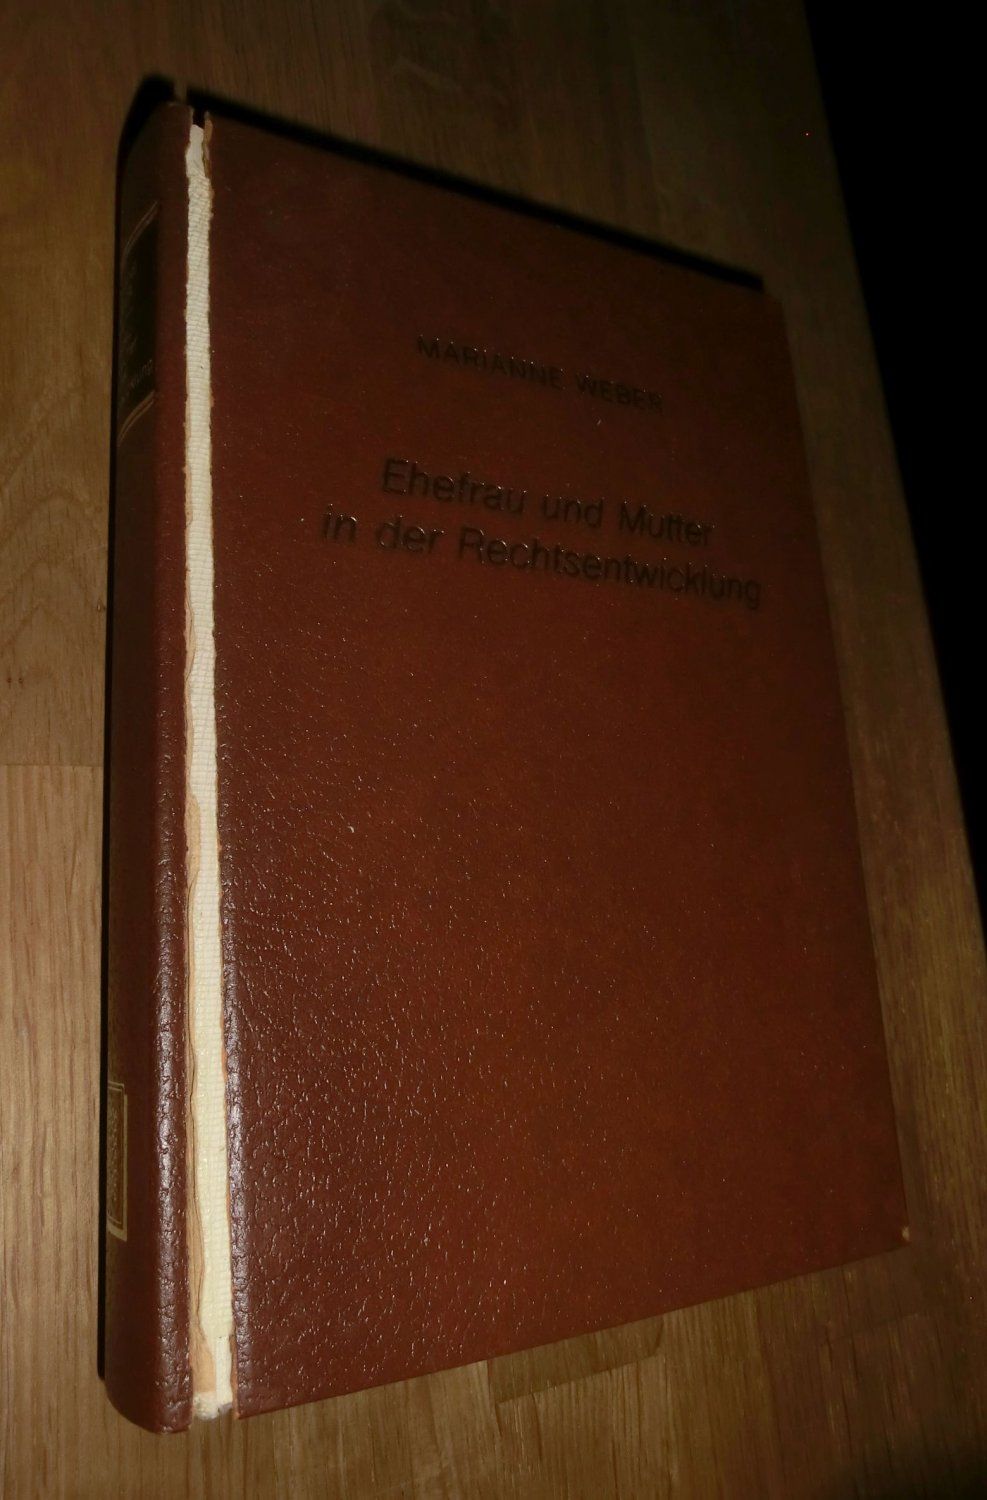 Ehefrau und Mutter in der Rechtsentwicklung: eine Einführung  5. oder spätere Auflage - Max Weber